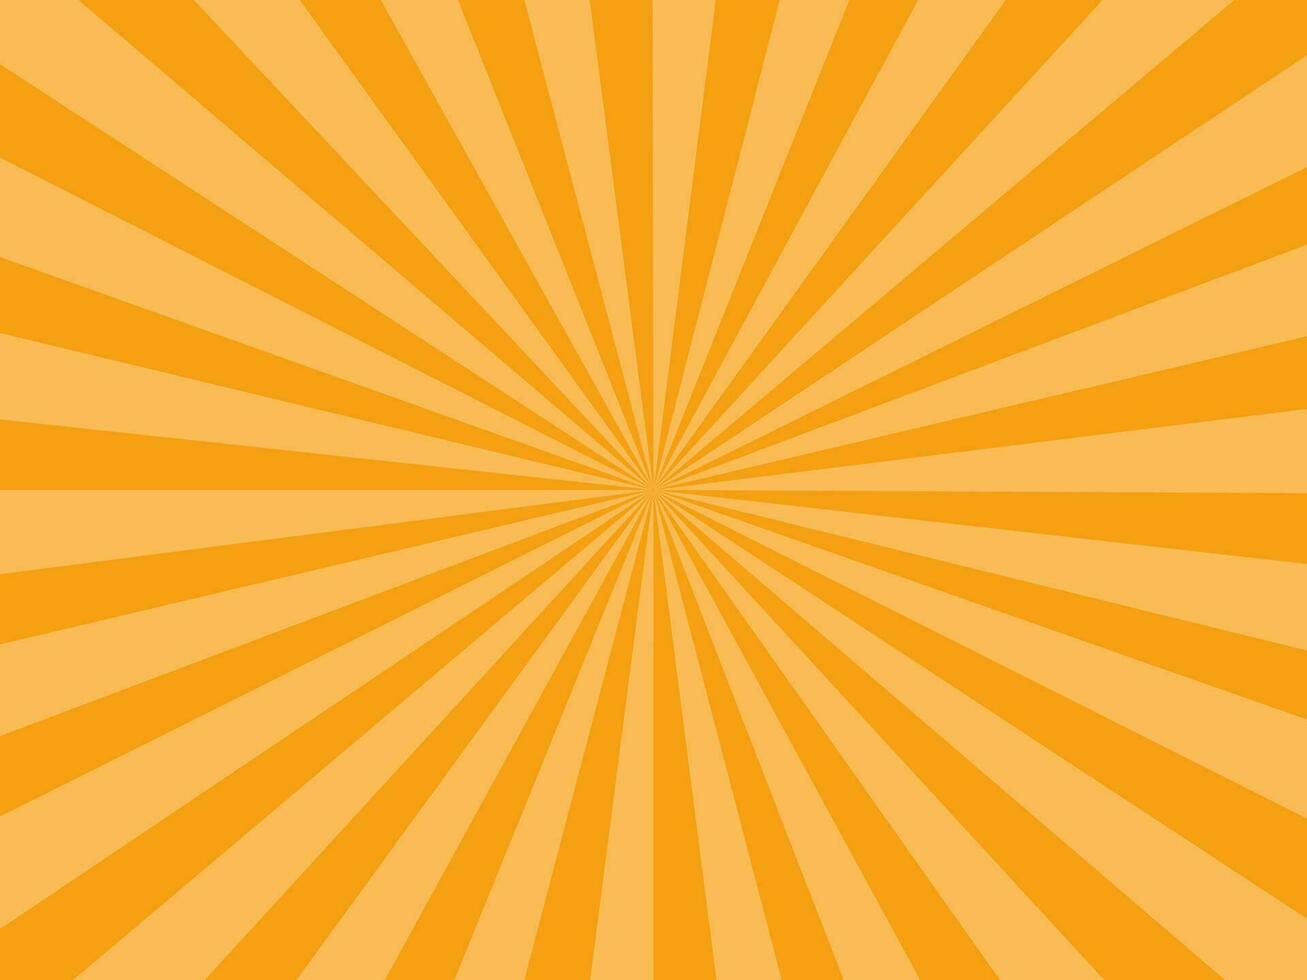 zonnestraal stralen oranje achtergrond. zonnestraal ster uitbarsting. vector illustratie